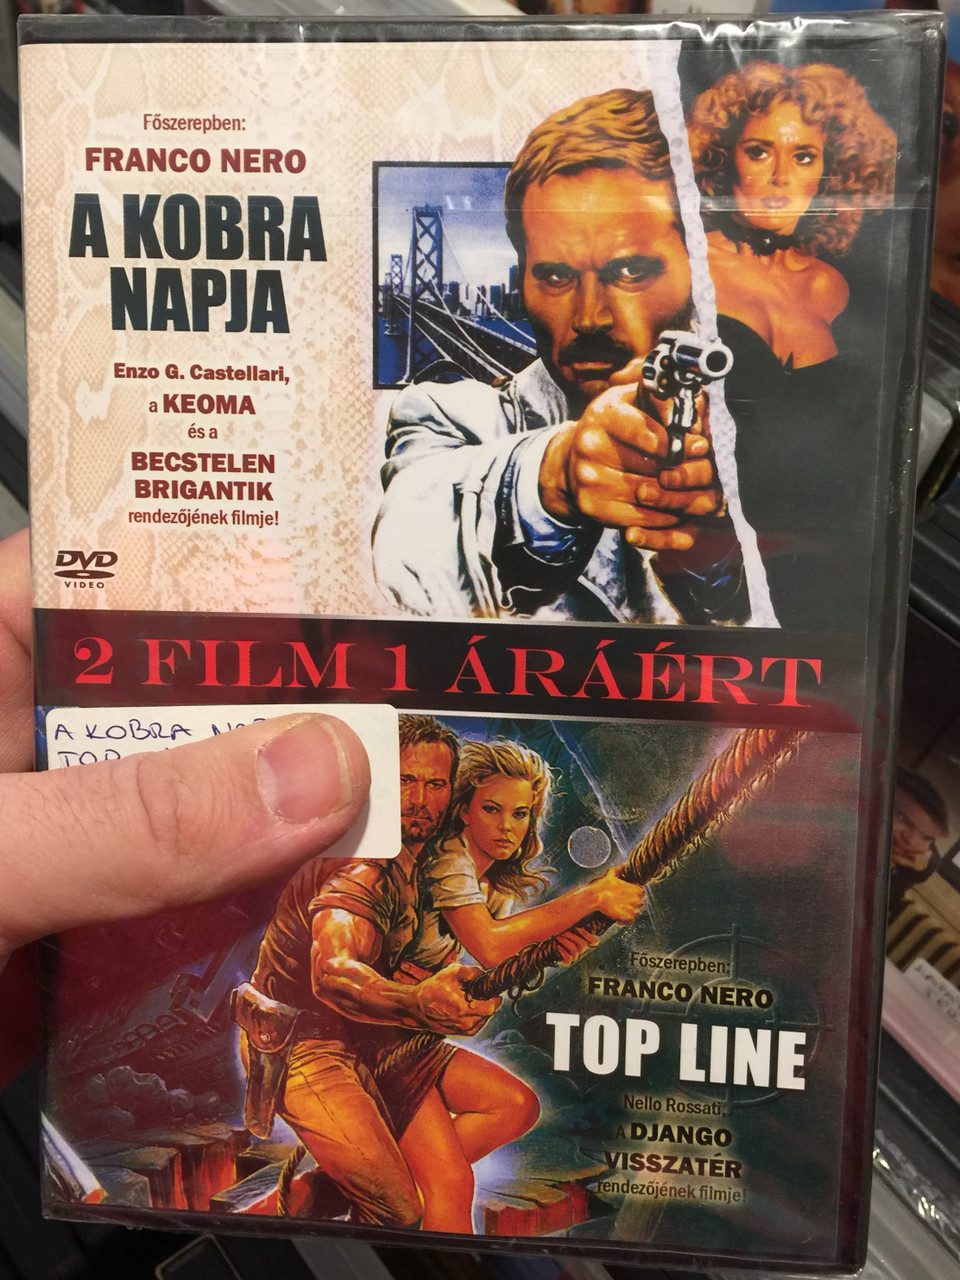 Il giorno del Cobra - A kobra napja 1980 / Top Line - Alien Terminator 1988  DVD / 2 Movies on 1 disc / Directed by Enzo G. Castellaro, Nello Rossati /